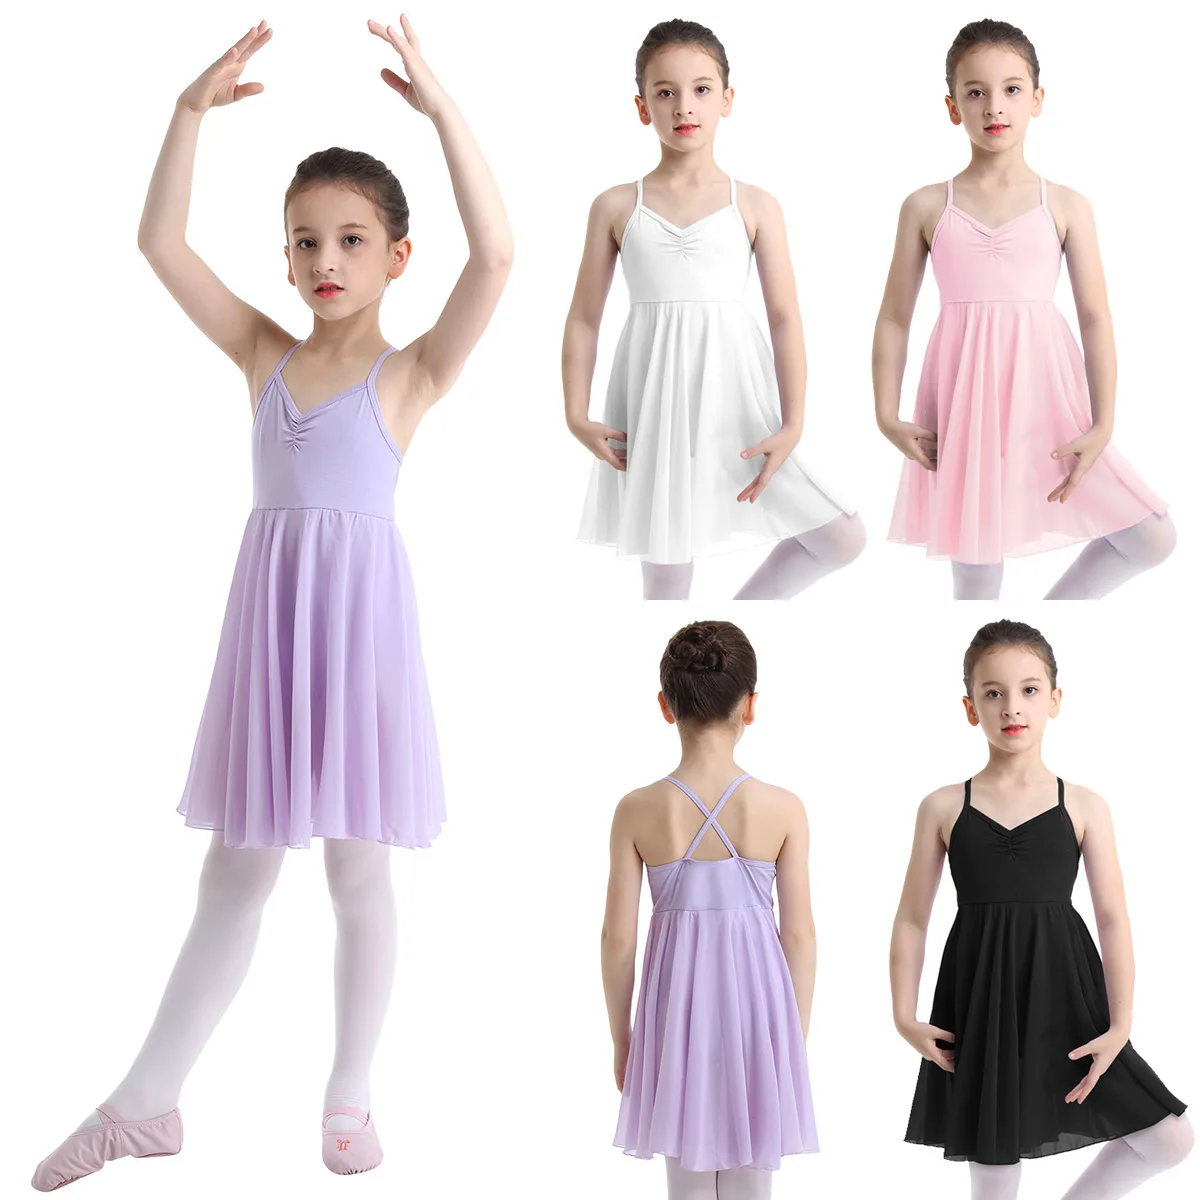 Feeshow балетное платье-пачка для девочек гимнастический купальник балет костюм Балерина Танцевальная одежда трико для девочек